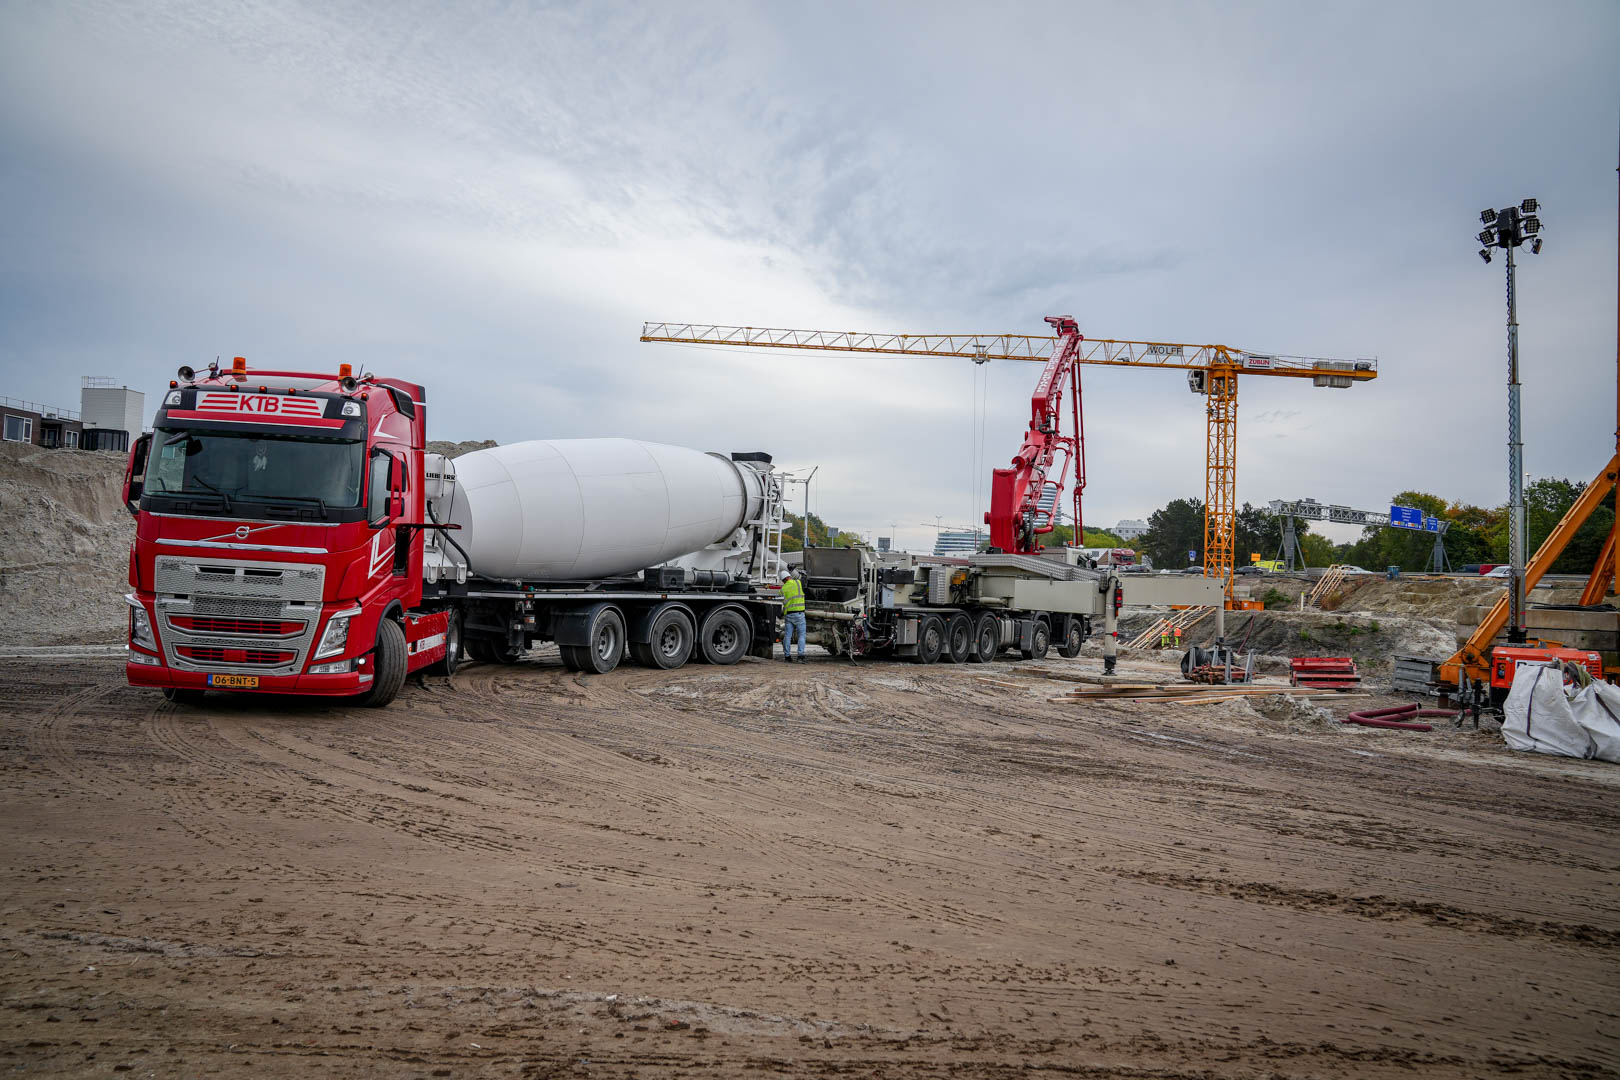 De betonmortel wordt aangevoerd met grote vrachtwagens. Hier wordt water aan toegevoegd, zodat een vloeibare massa ontstaat. Foto: Raymond Bos